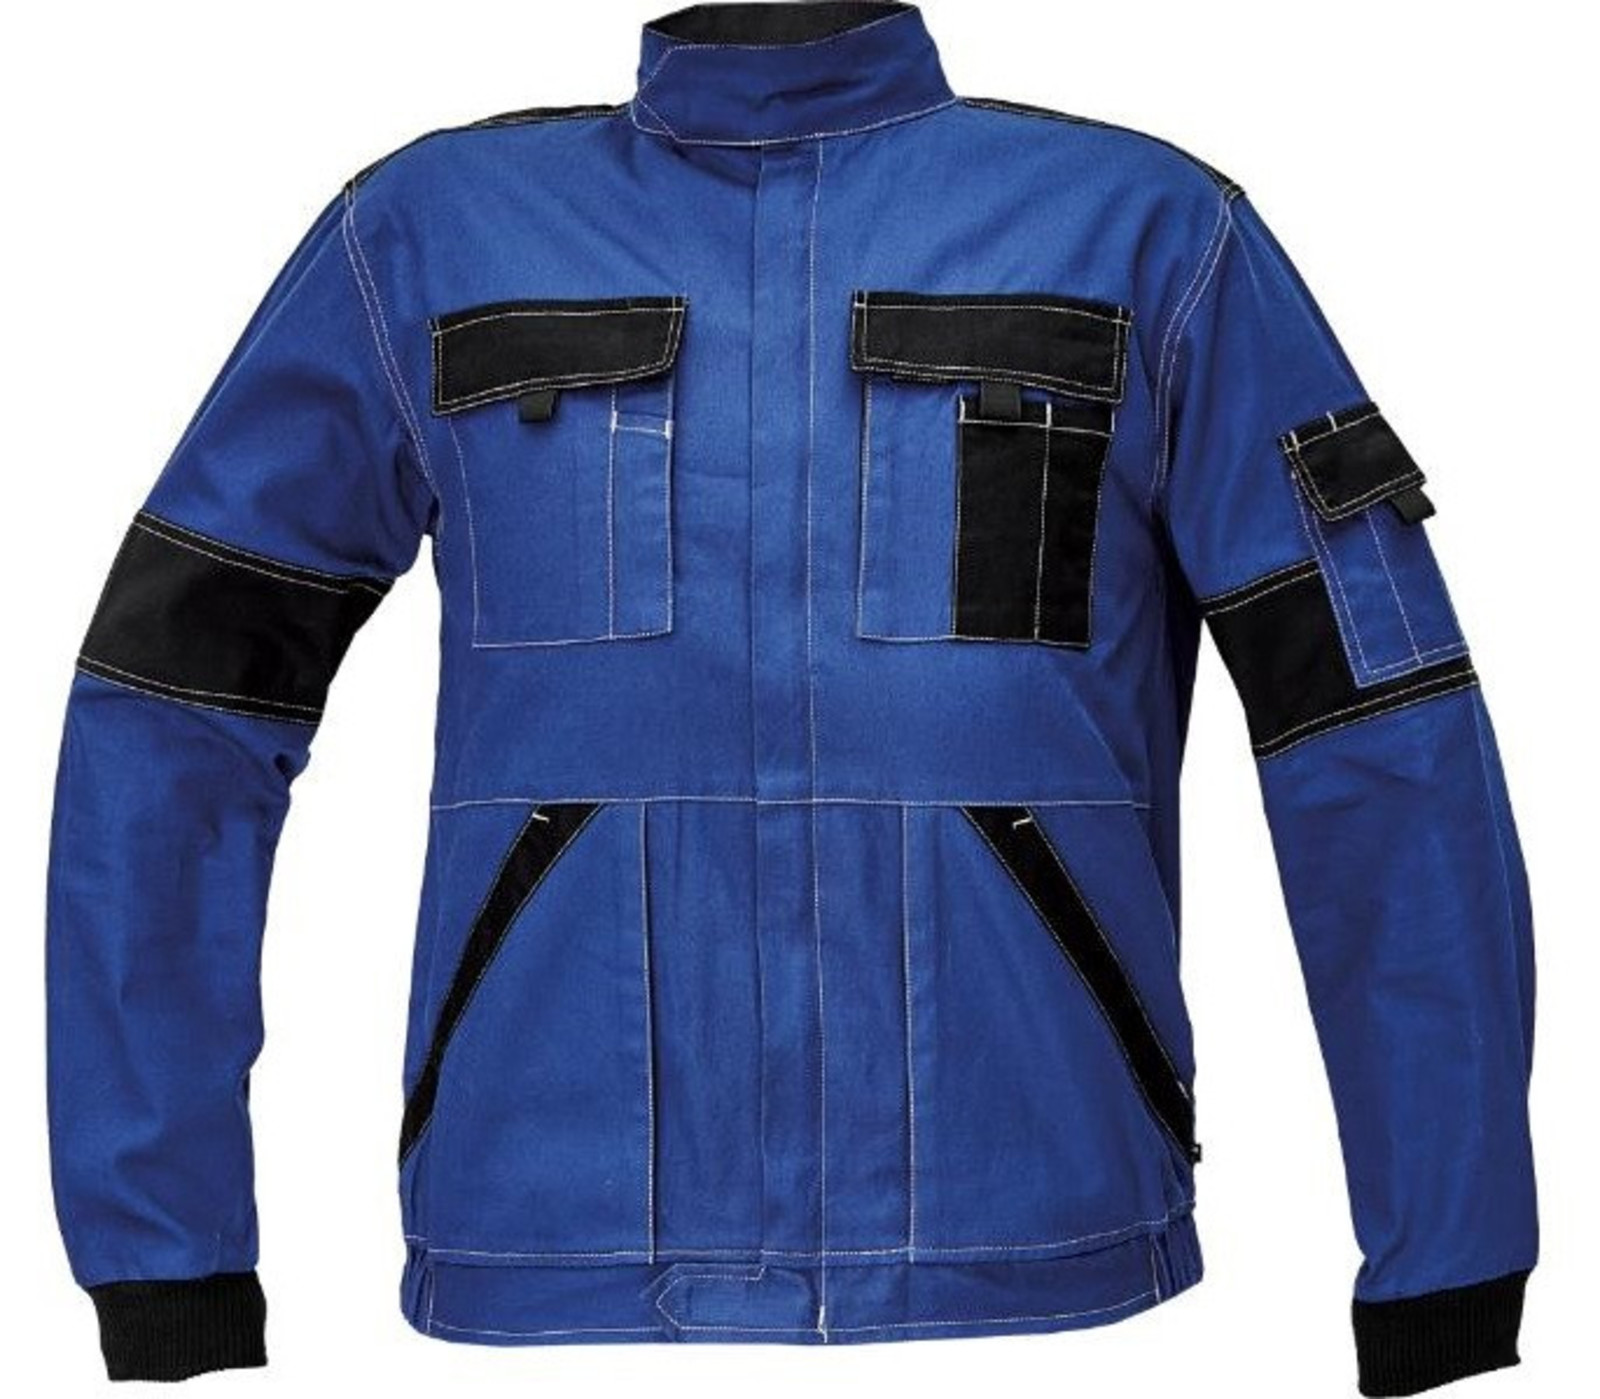 Tenšia bavlnená montérková bunda Max Summer  - veľkosť: 56, farba: modrá/čierna